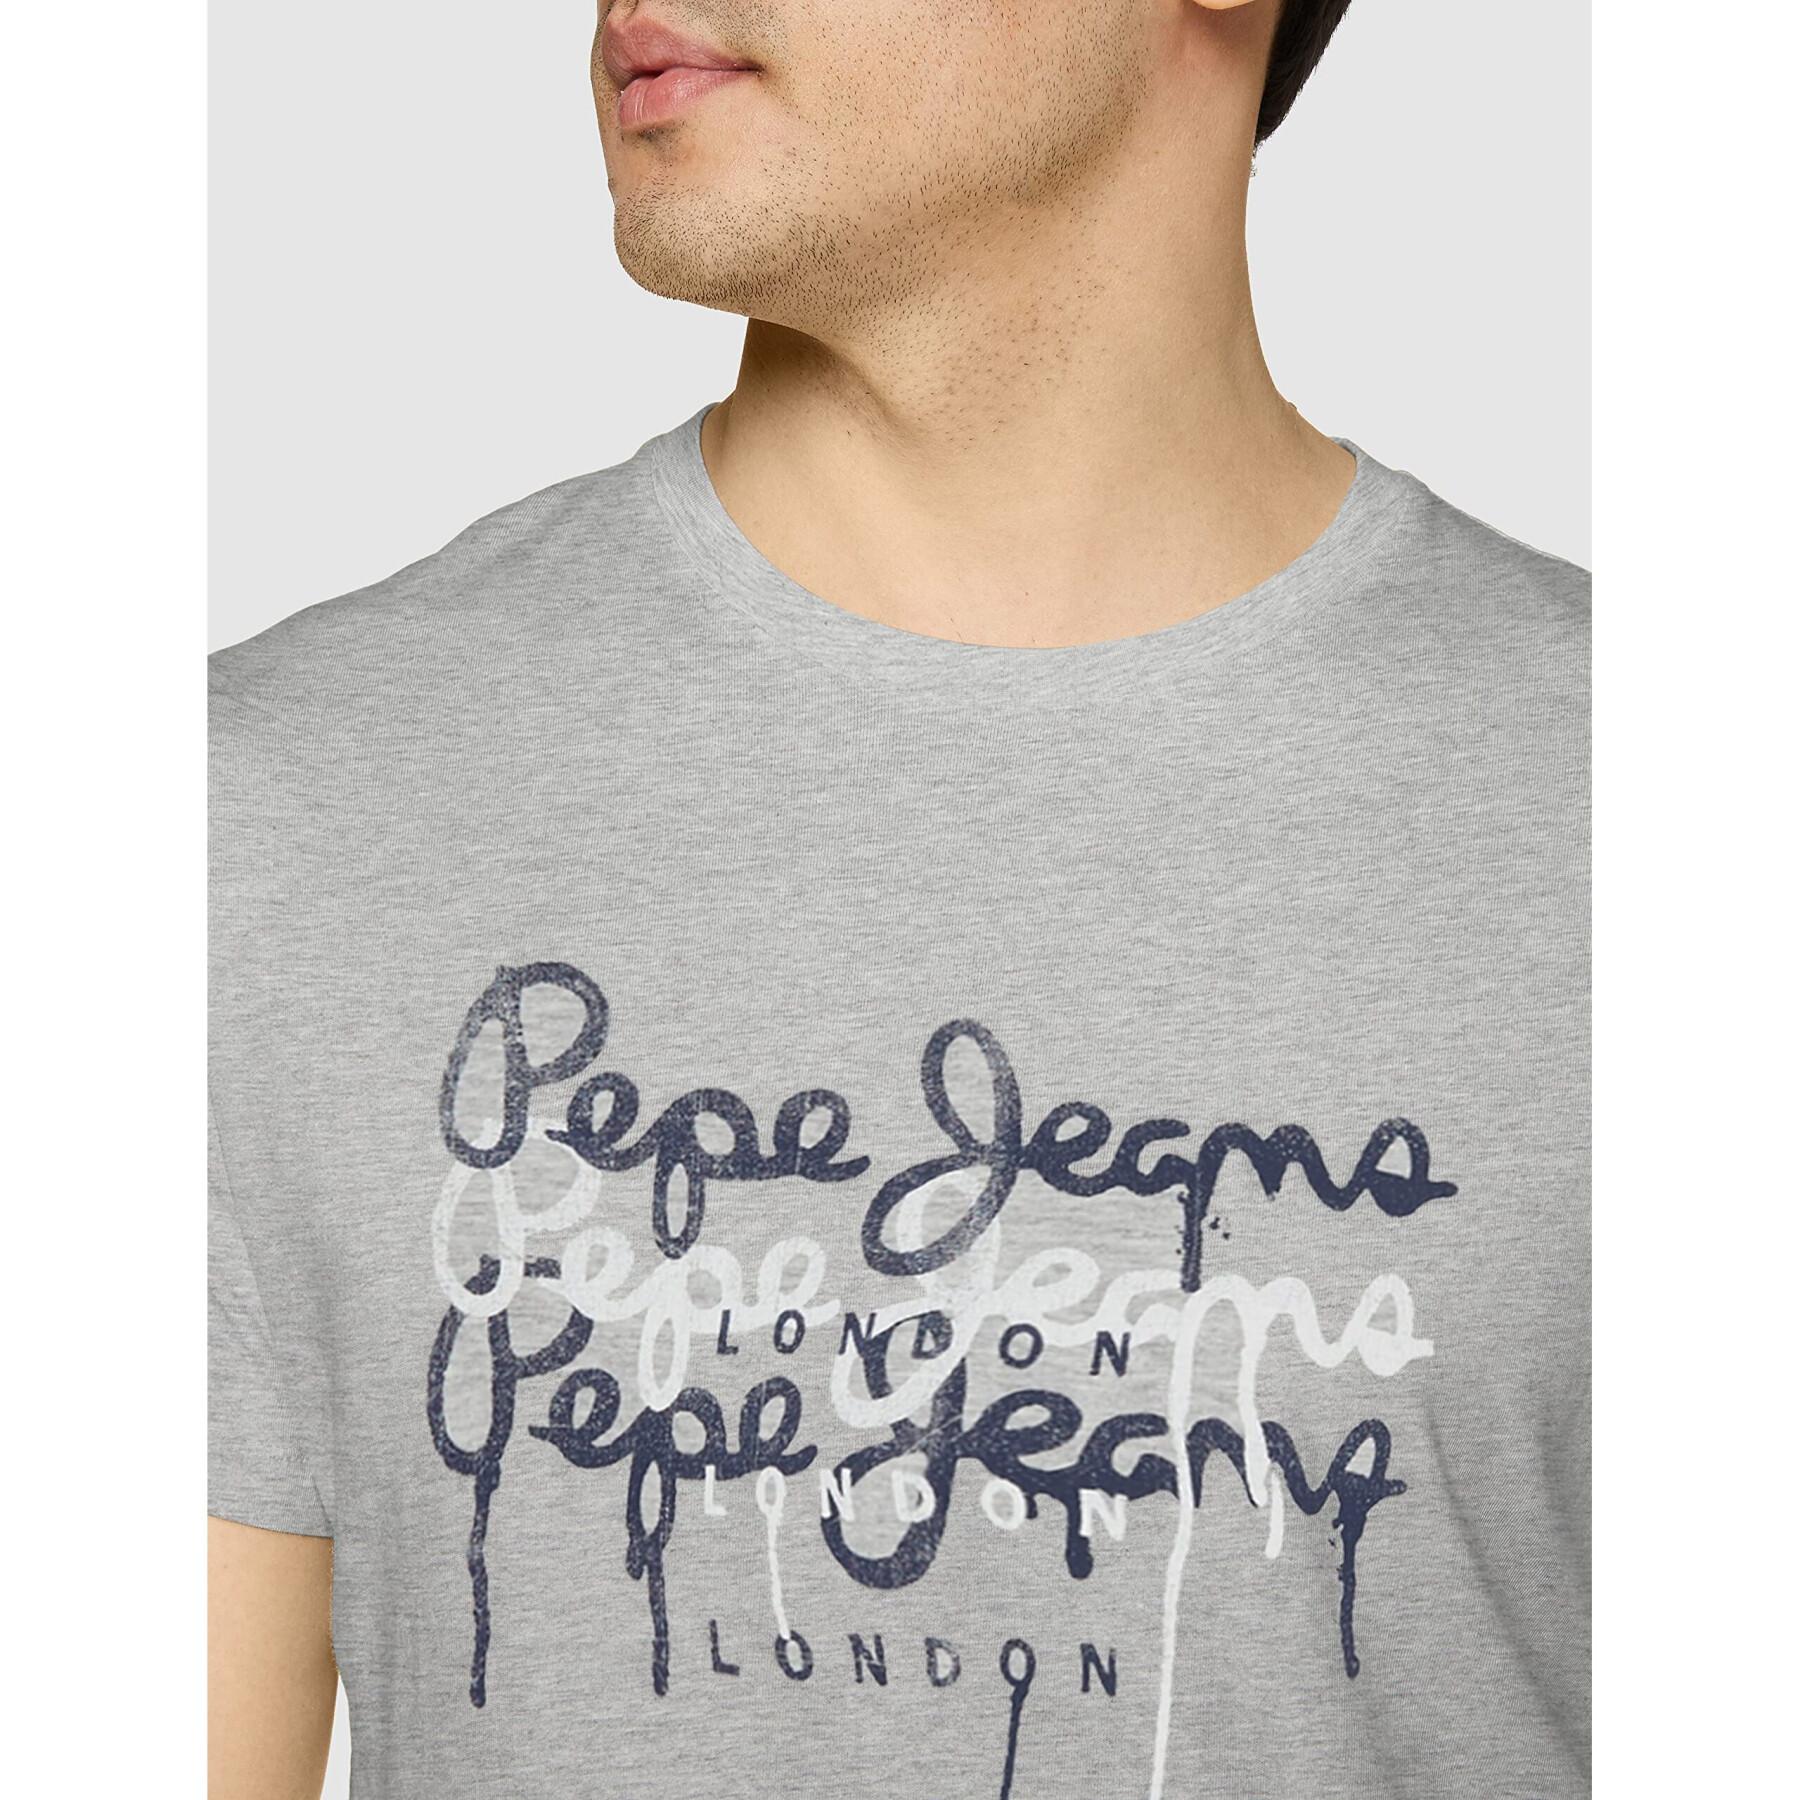 Koszulka Pepe Jeans Moe 2